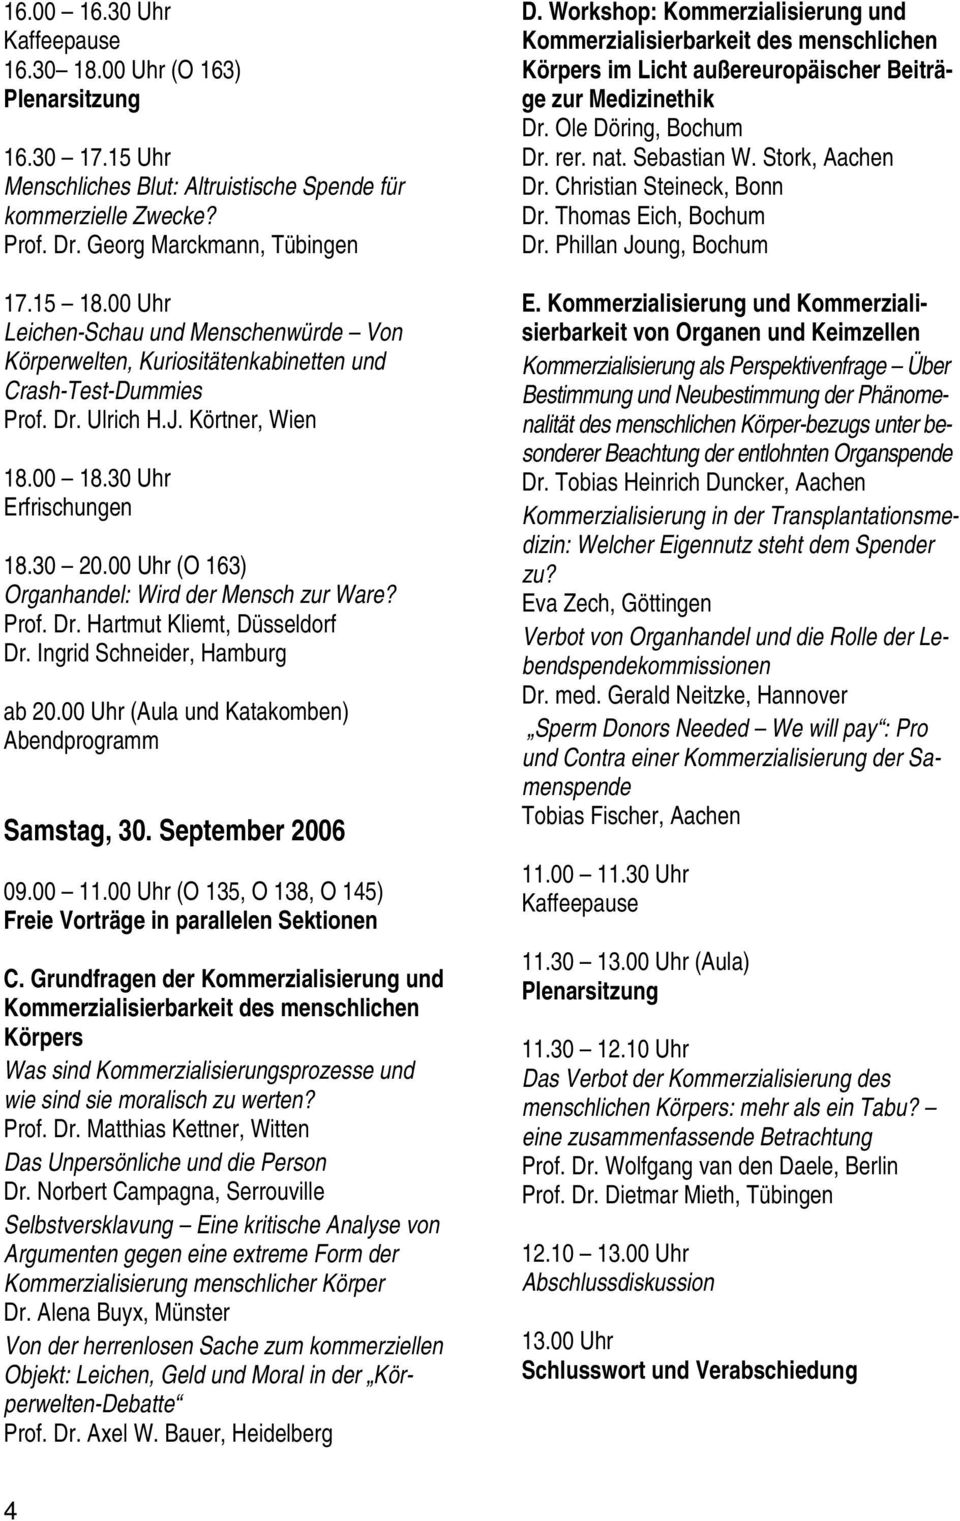 00 Uhr (O 163) Organhandel: Wird der Mensch zur Ware? Prof. Dr. Hartmut Kliemt, Düsseldorf Dr. Ingrid Schneider, Hamburg ab 20.00 Uhr (Aula und Katakomben) Abendprogramm Samstag, 30.